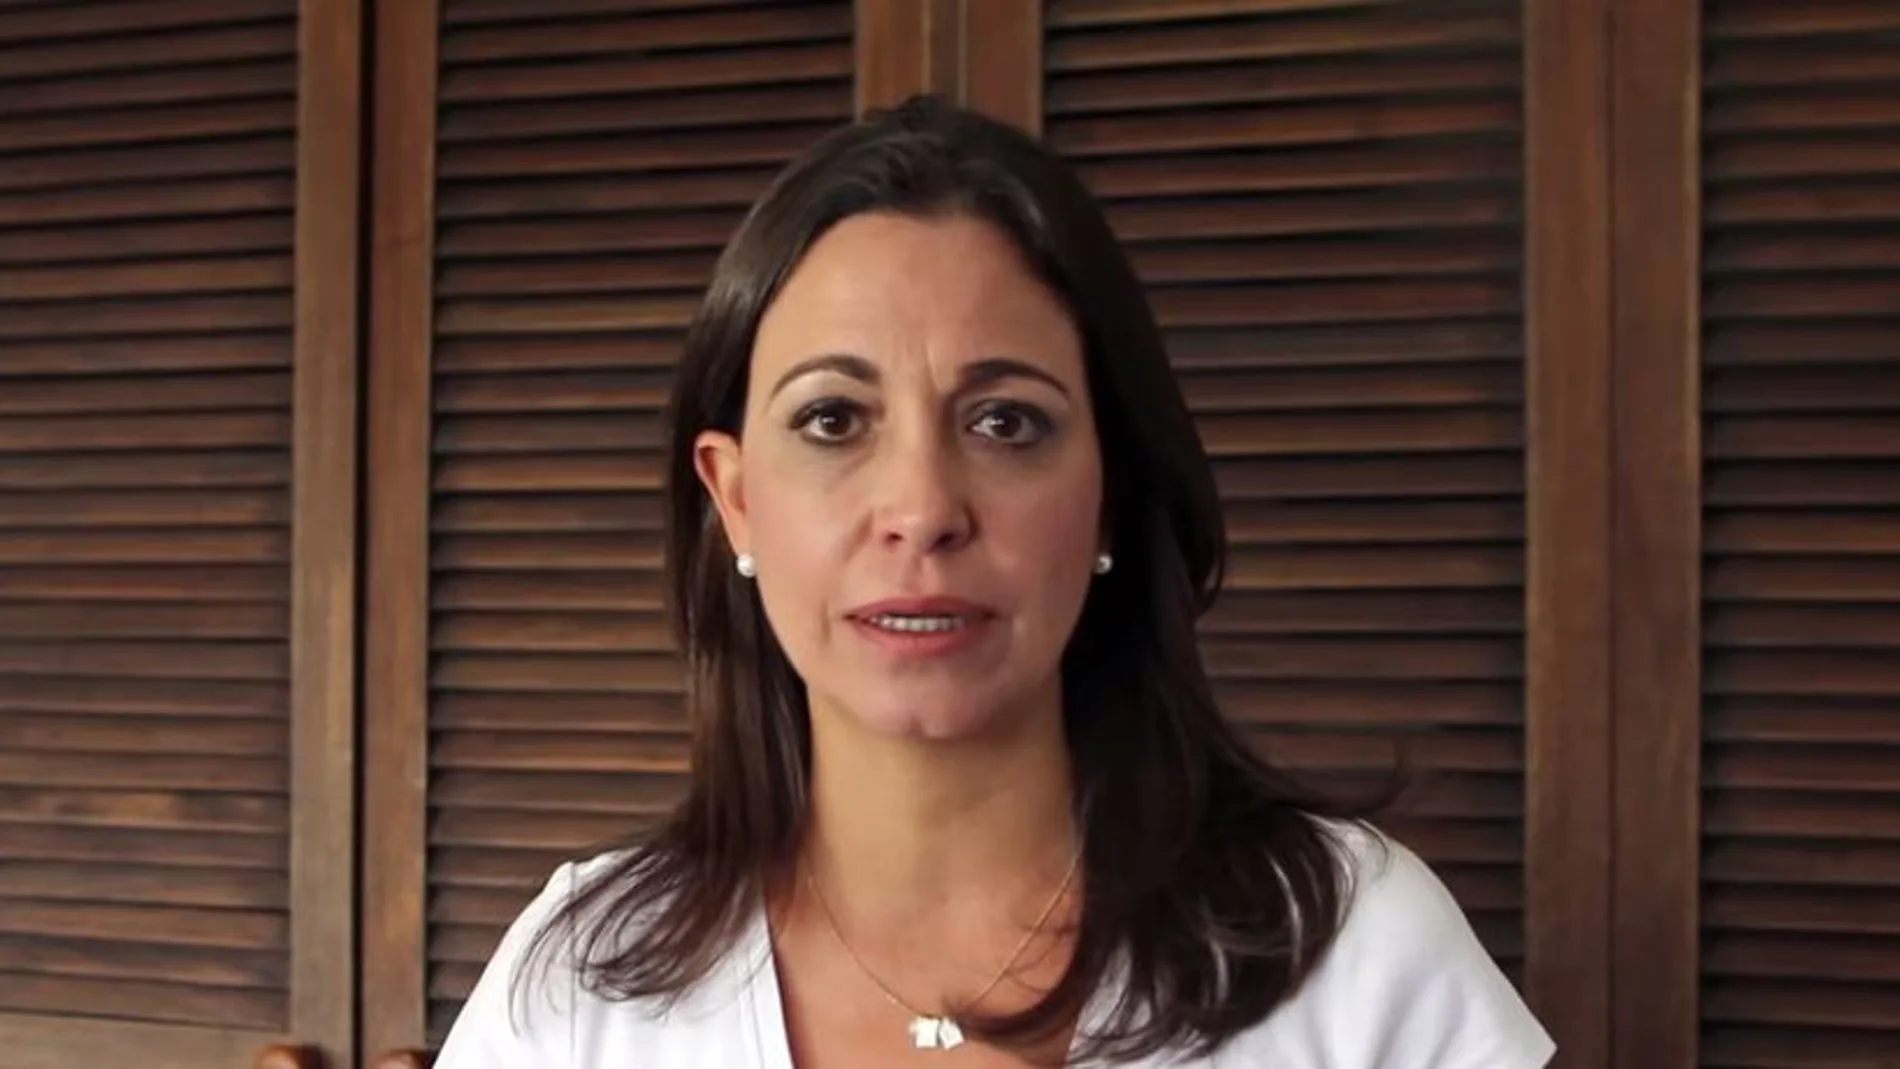 Maria Corina Machado, en un fotograma del vídeo.